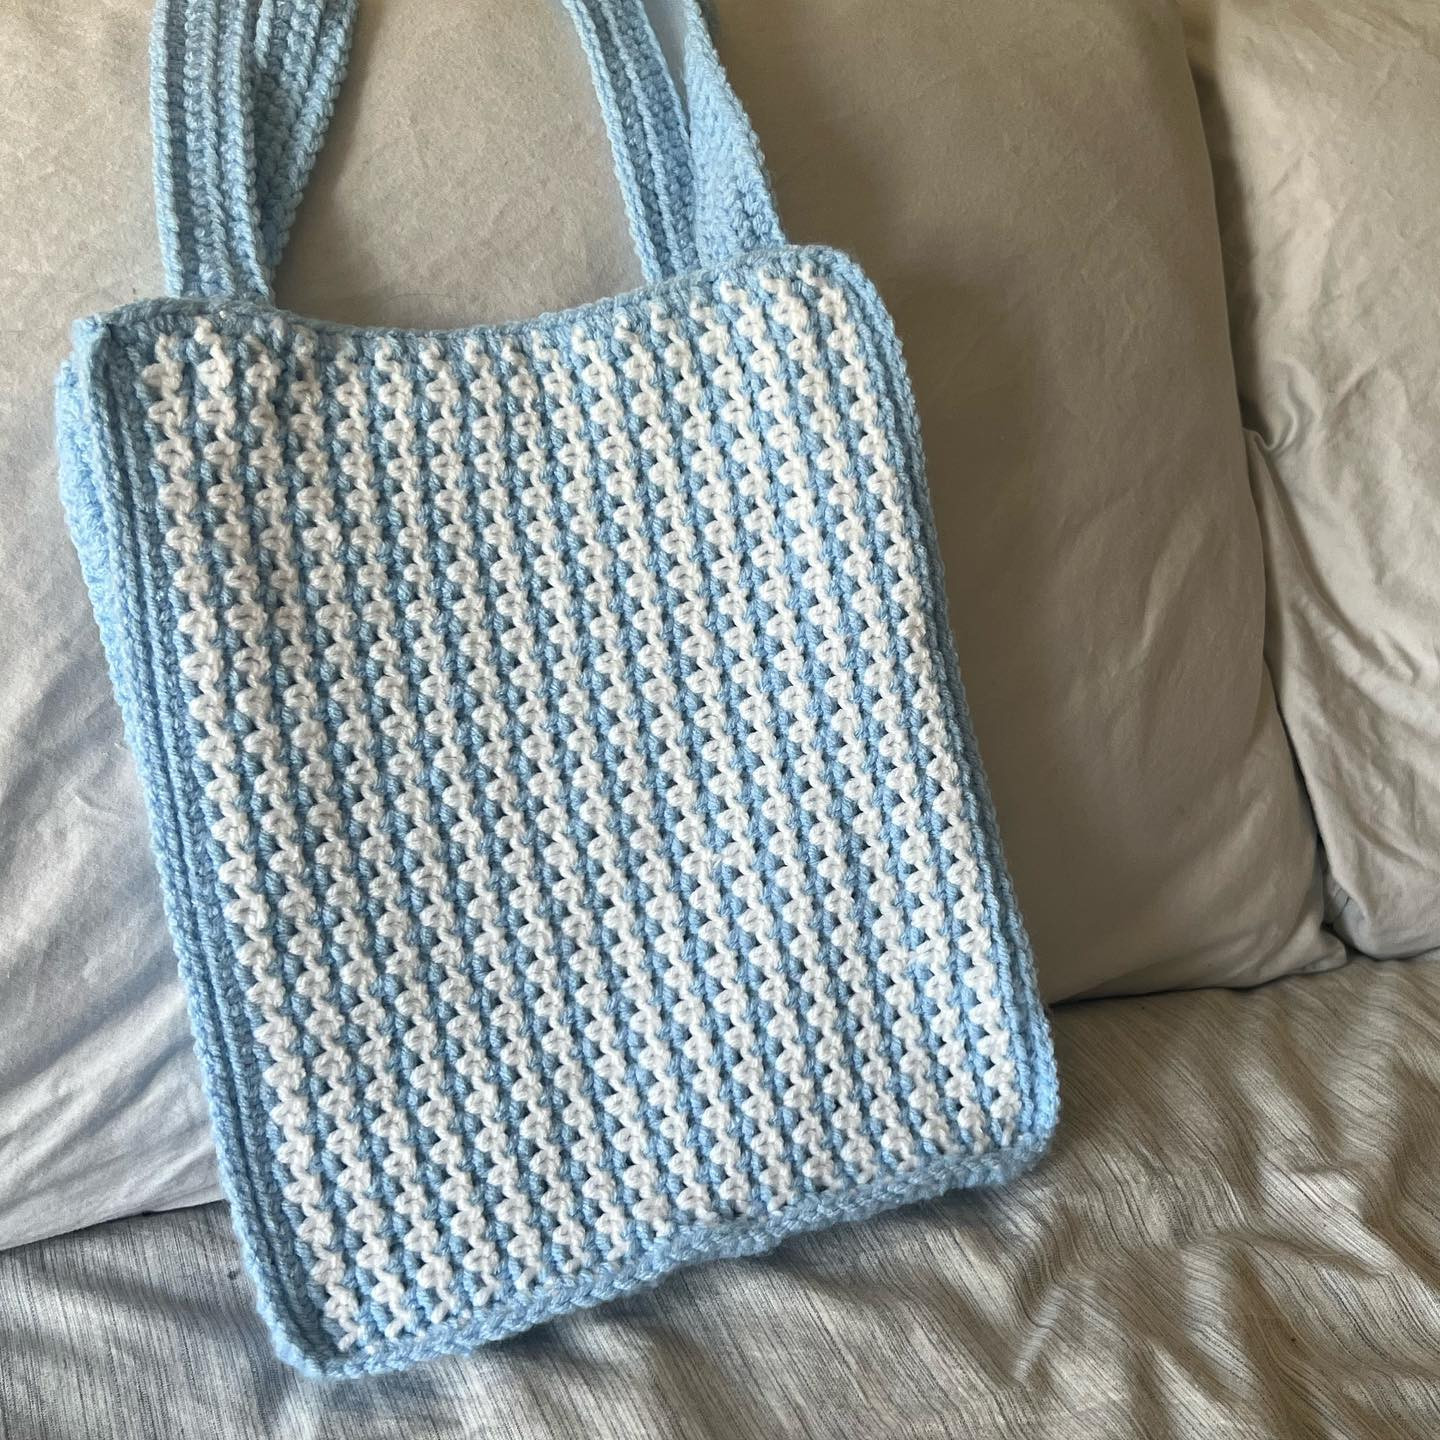 tote bag free pattern